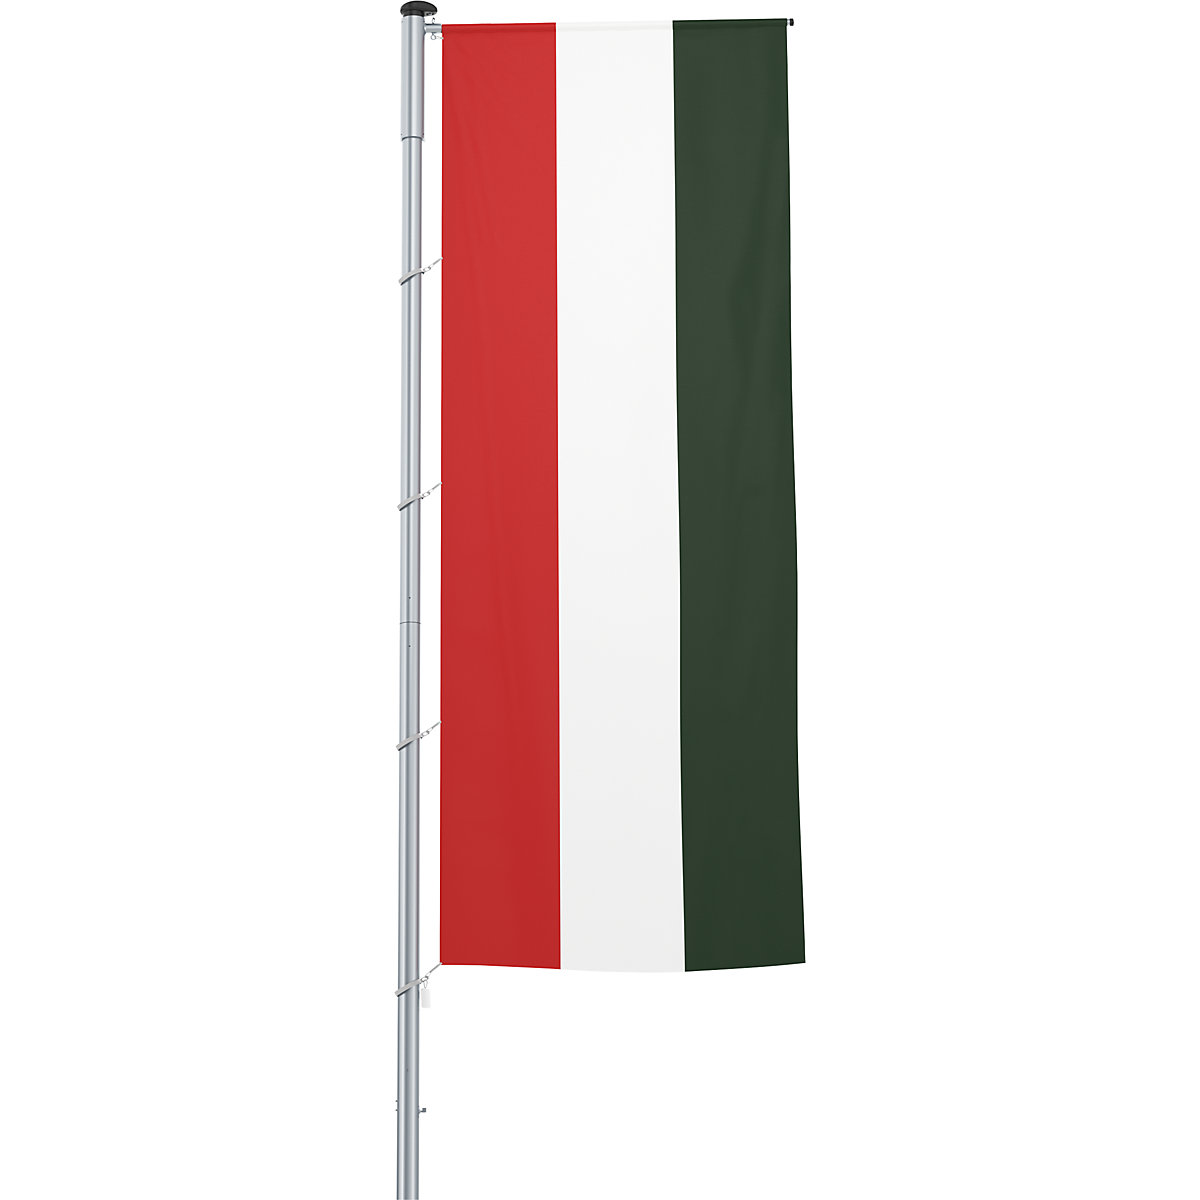 Vlajka na pozdĺžne upevnenie na stožiar/národná vlajka – Mannus, formát 1,2 x 3 m, Maďarsko-13